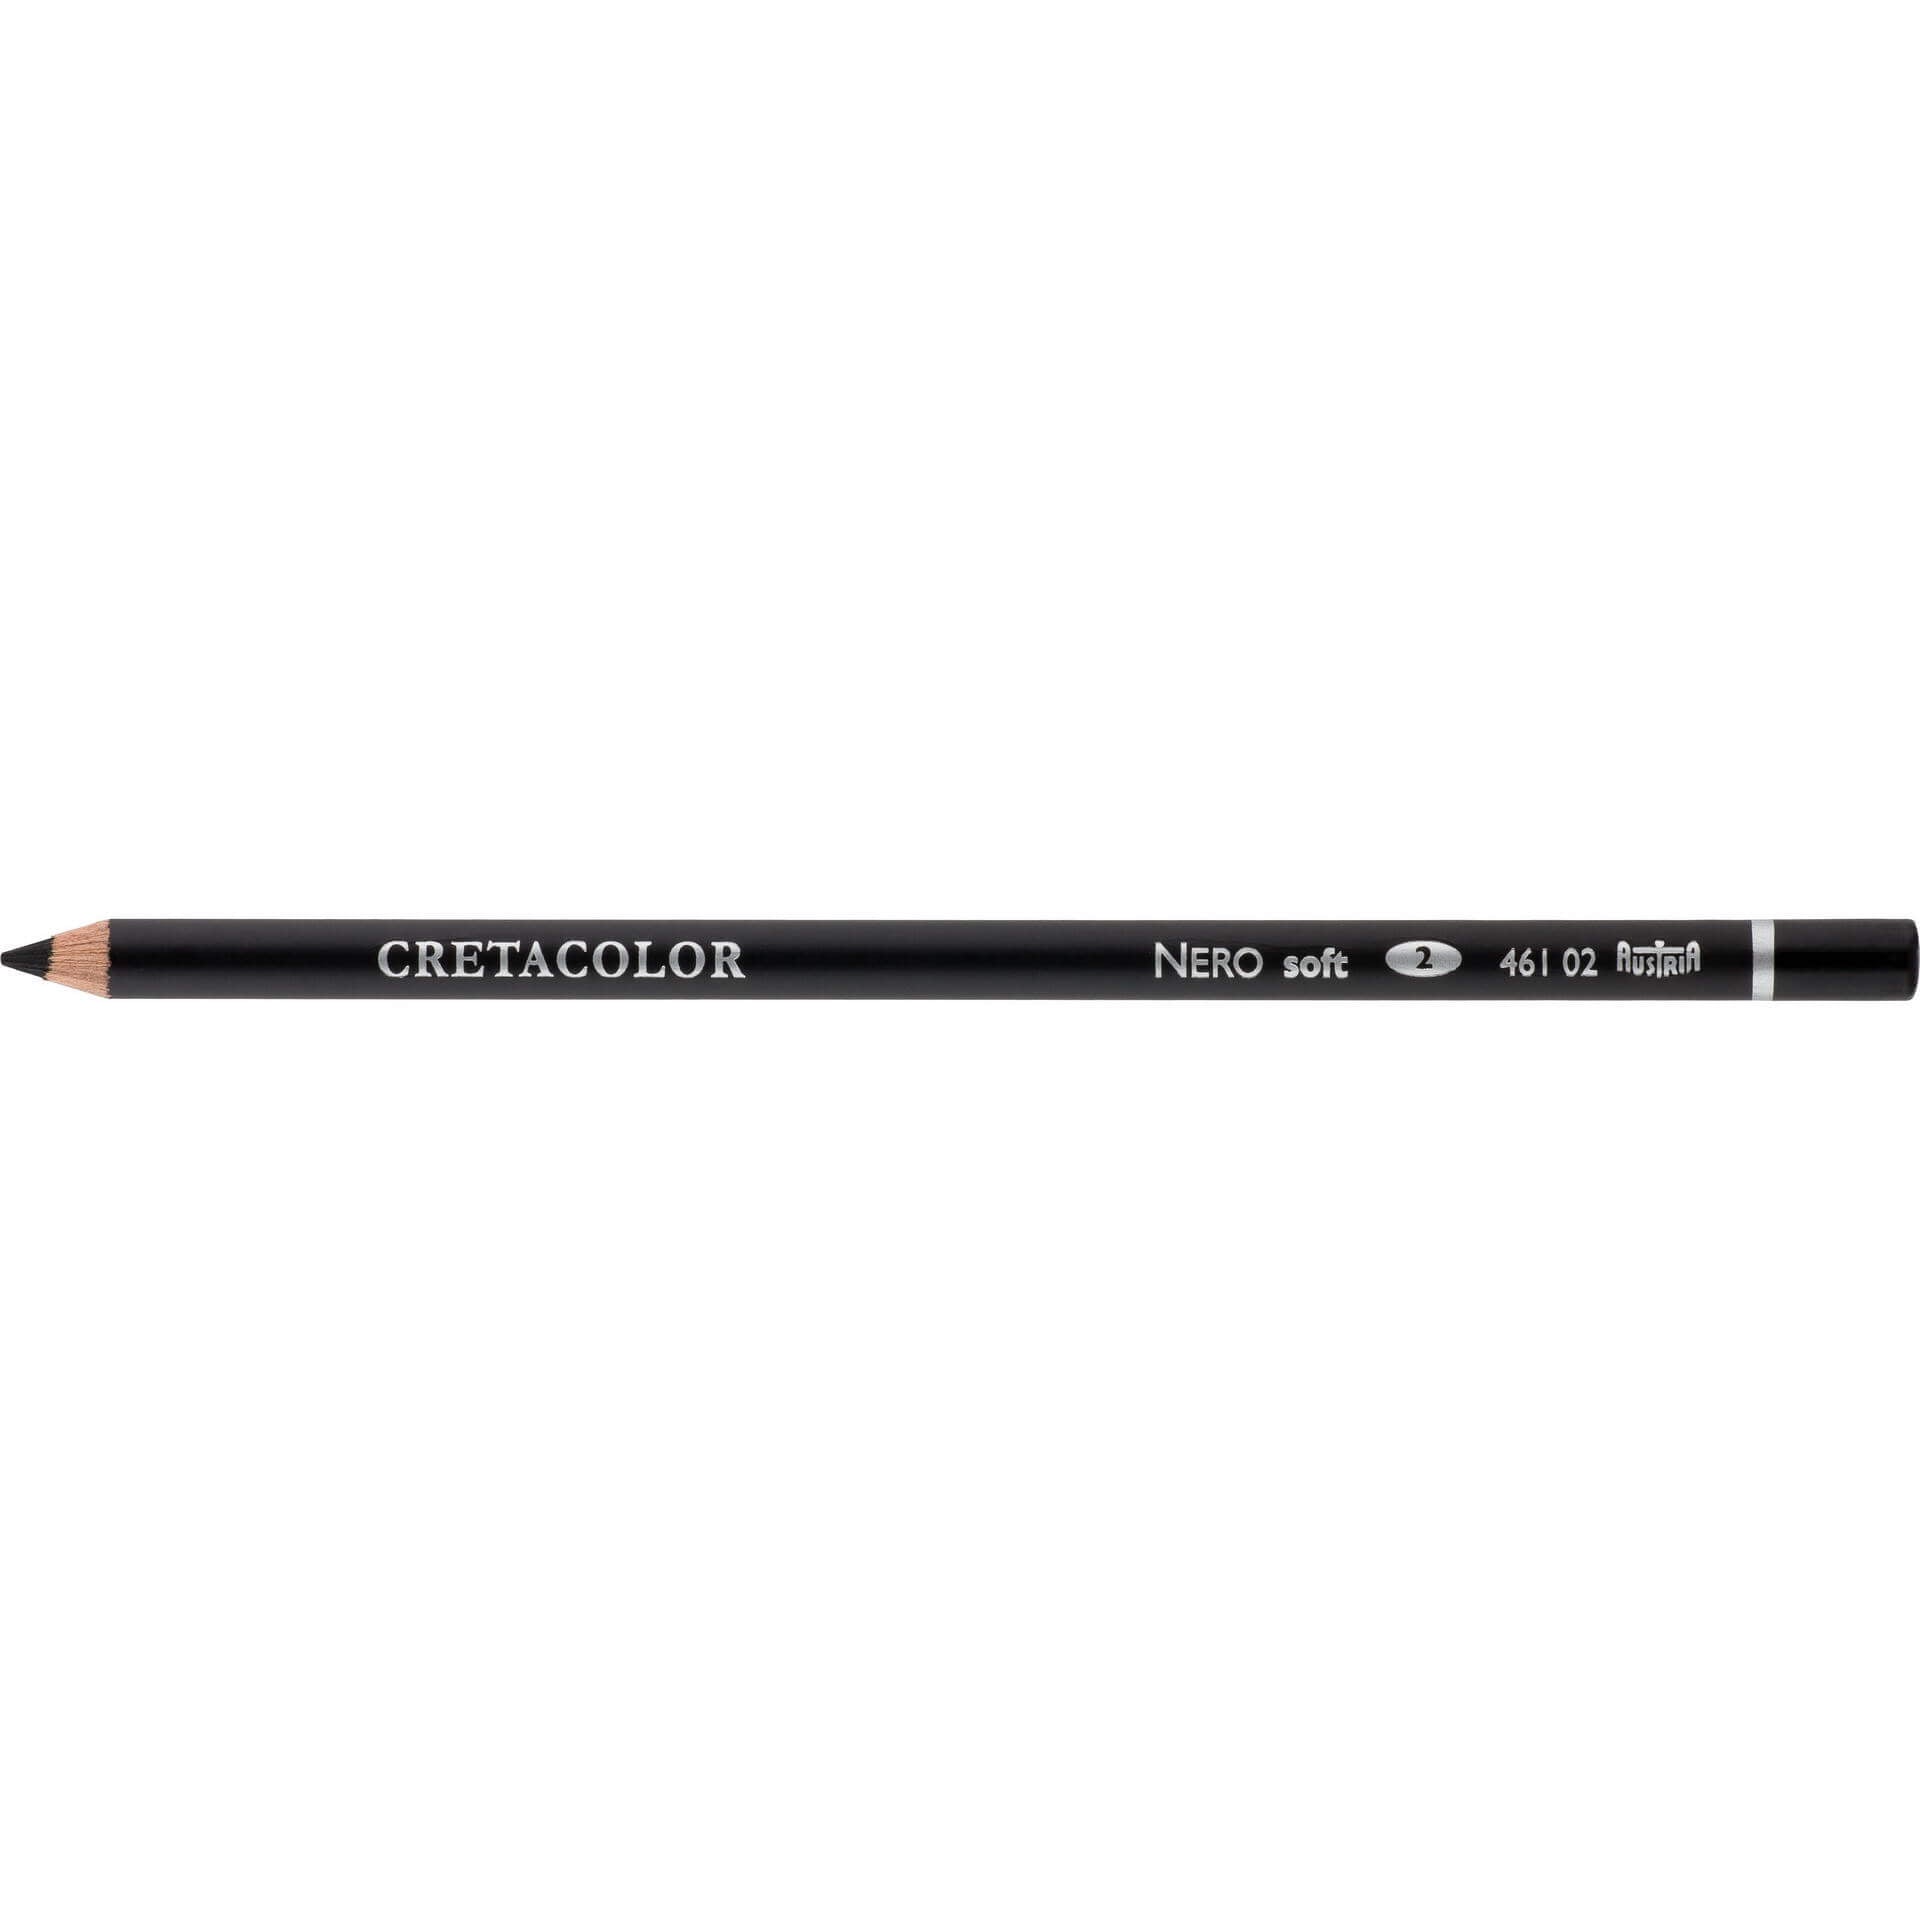 Cretacolor Nero Oil based Pencil Soft